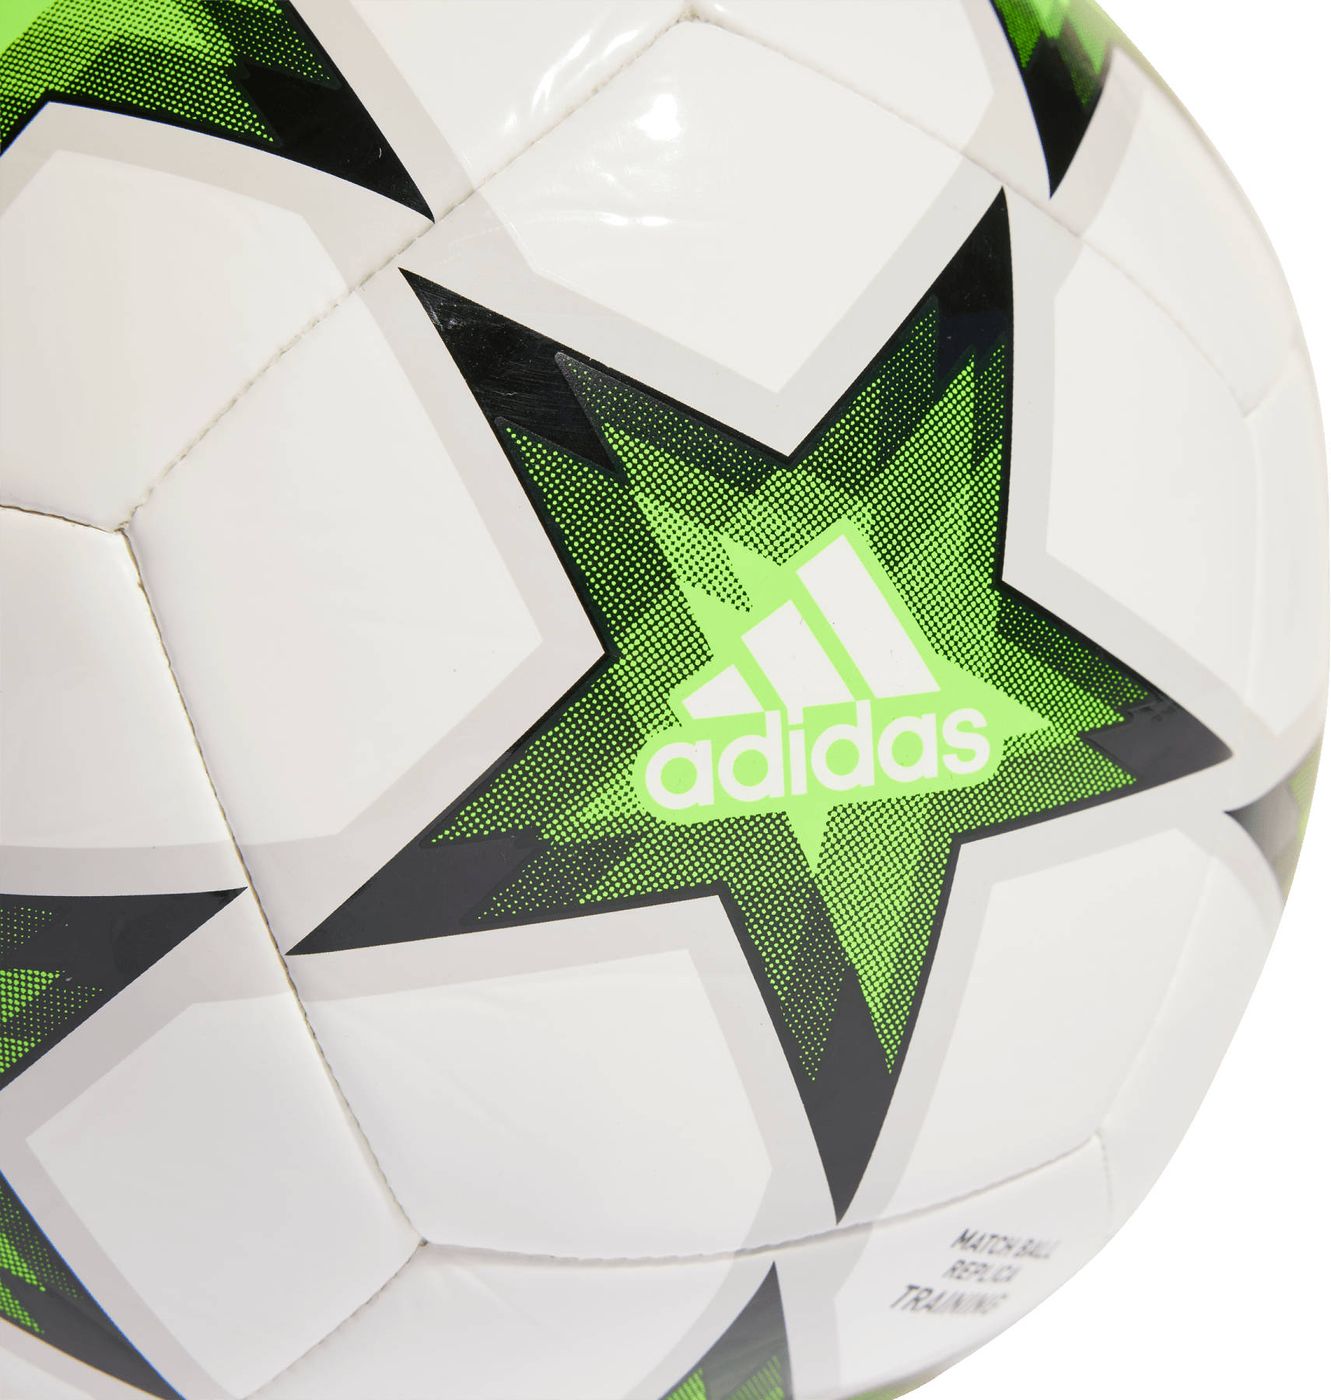 М'яч футбольний adidas Finale Club купити